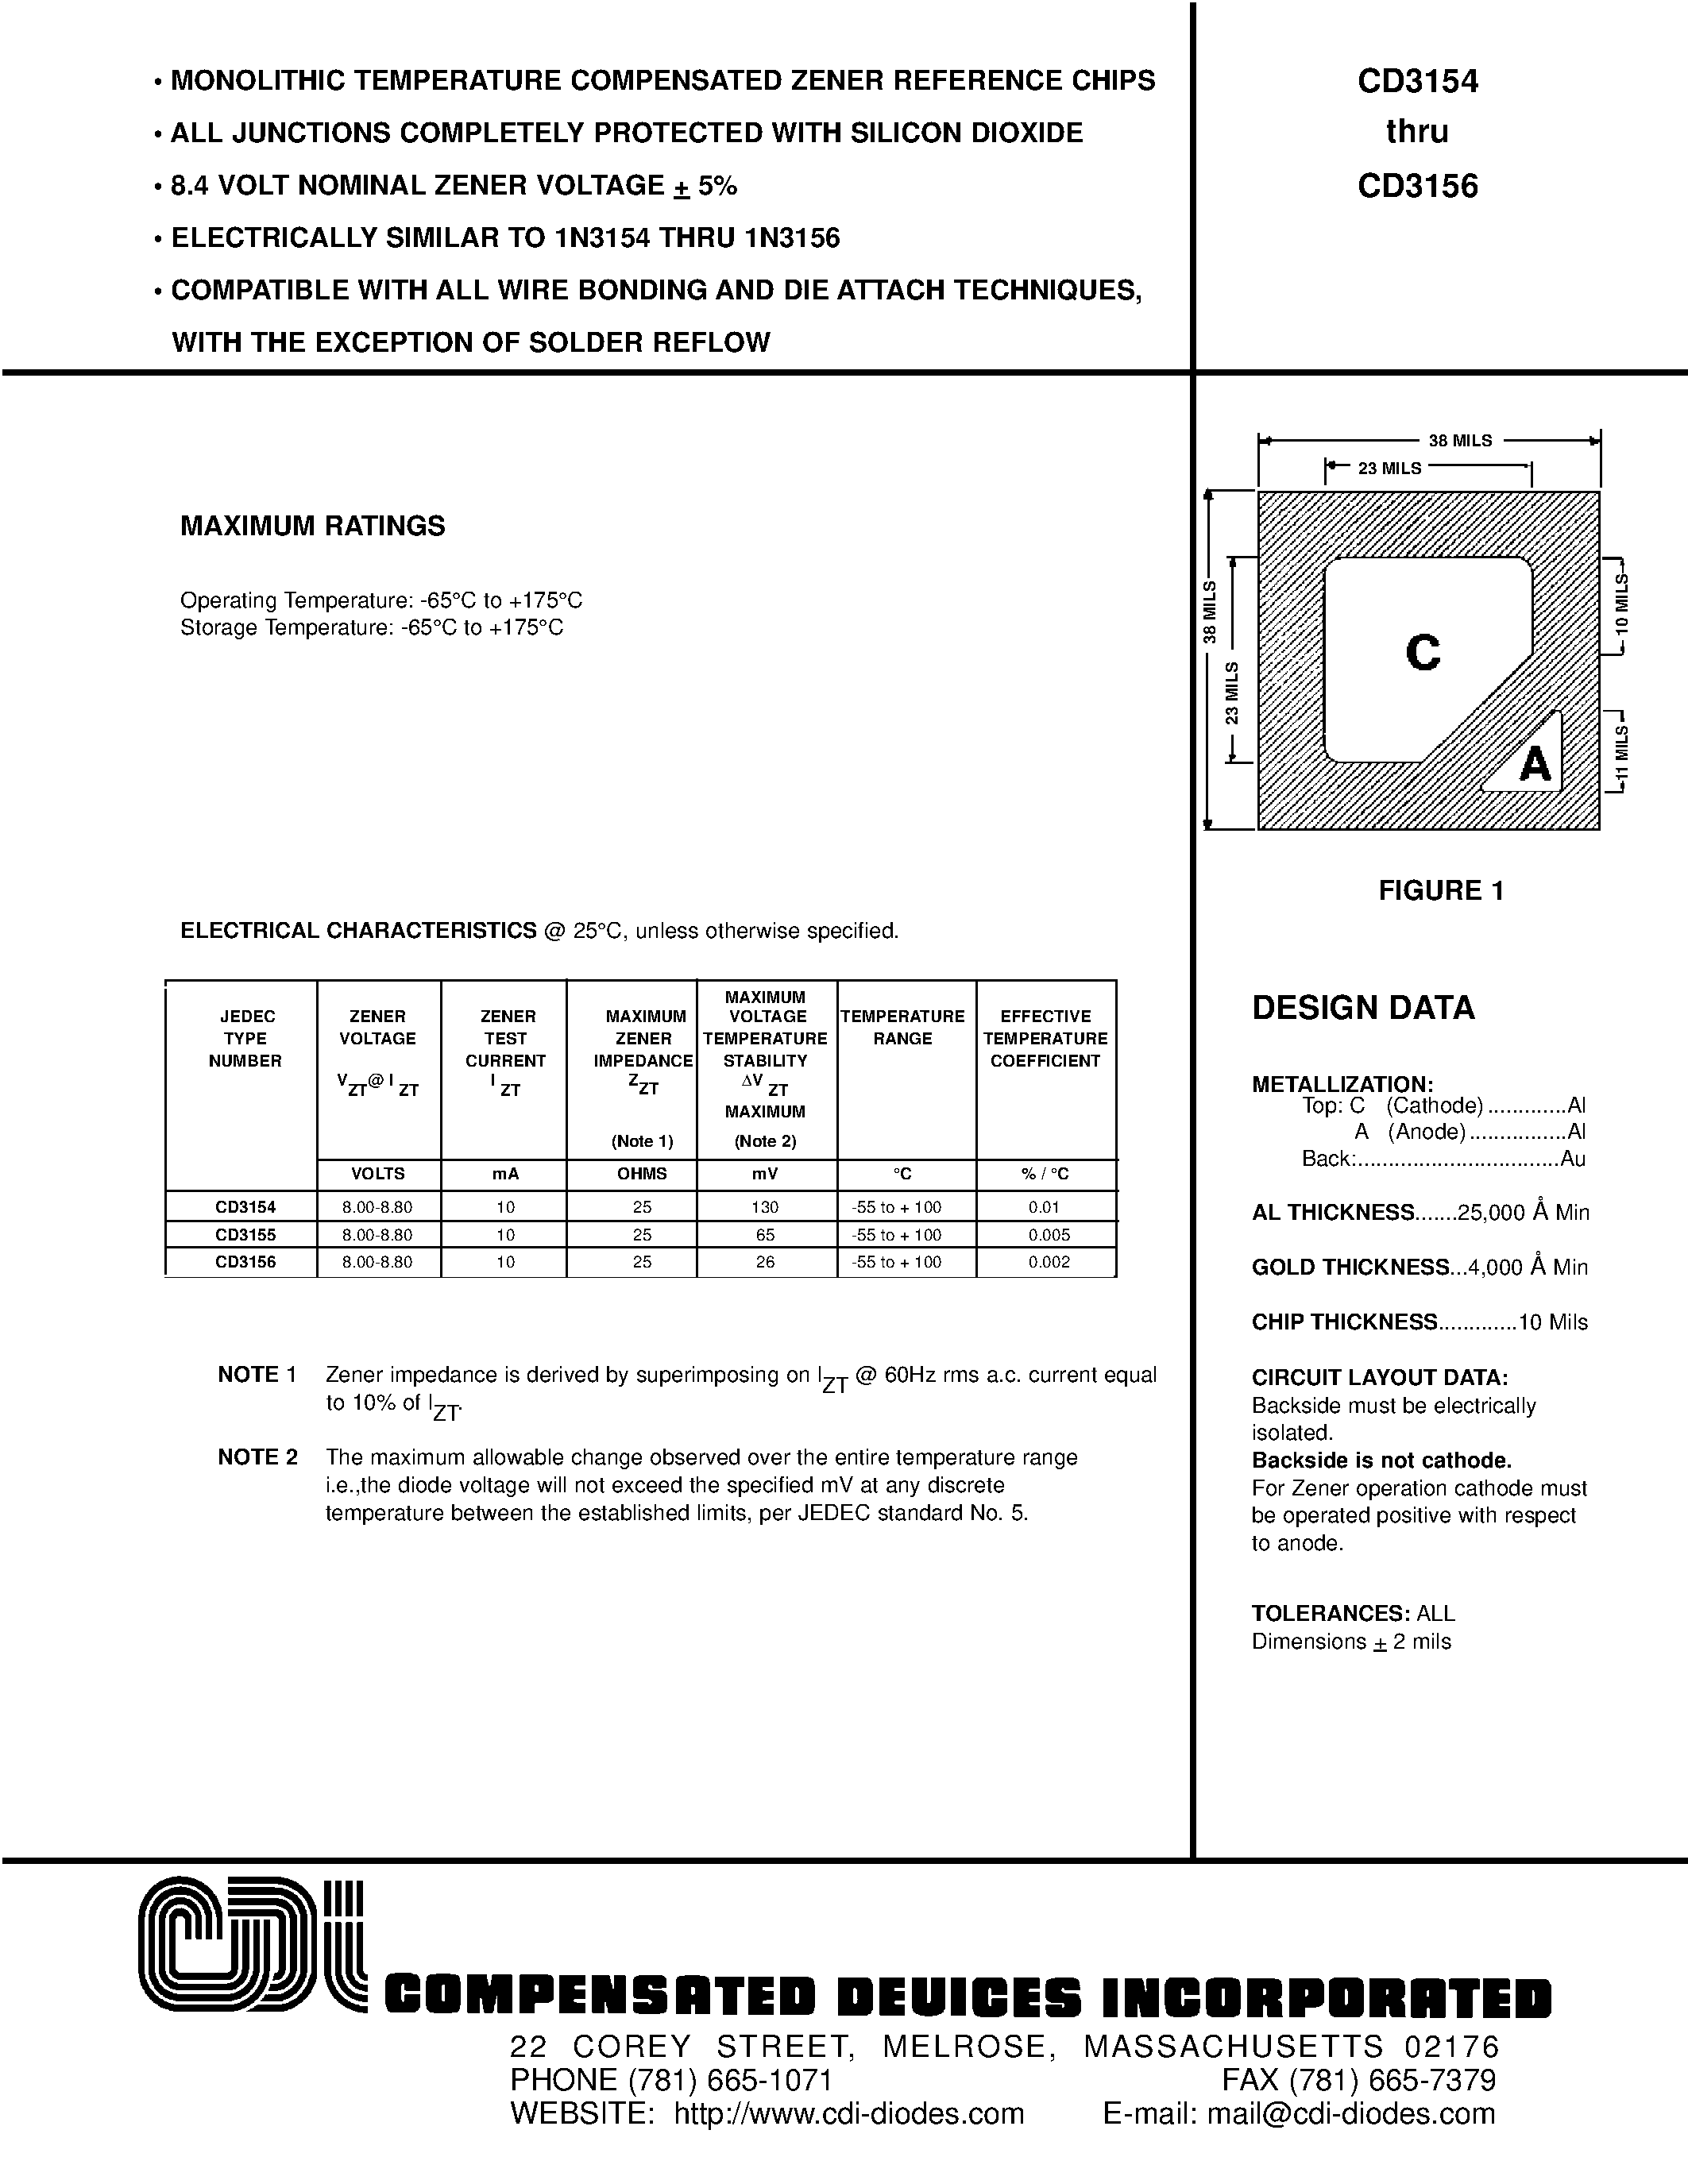 Datasheet CD3154 - 8.4 VOLT NOMINAL ZENER VOLTAGE + 5% page 1